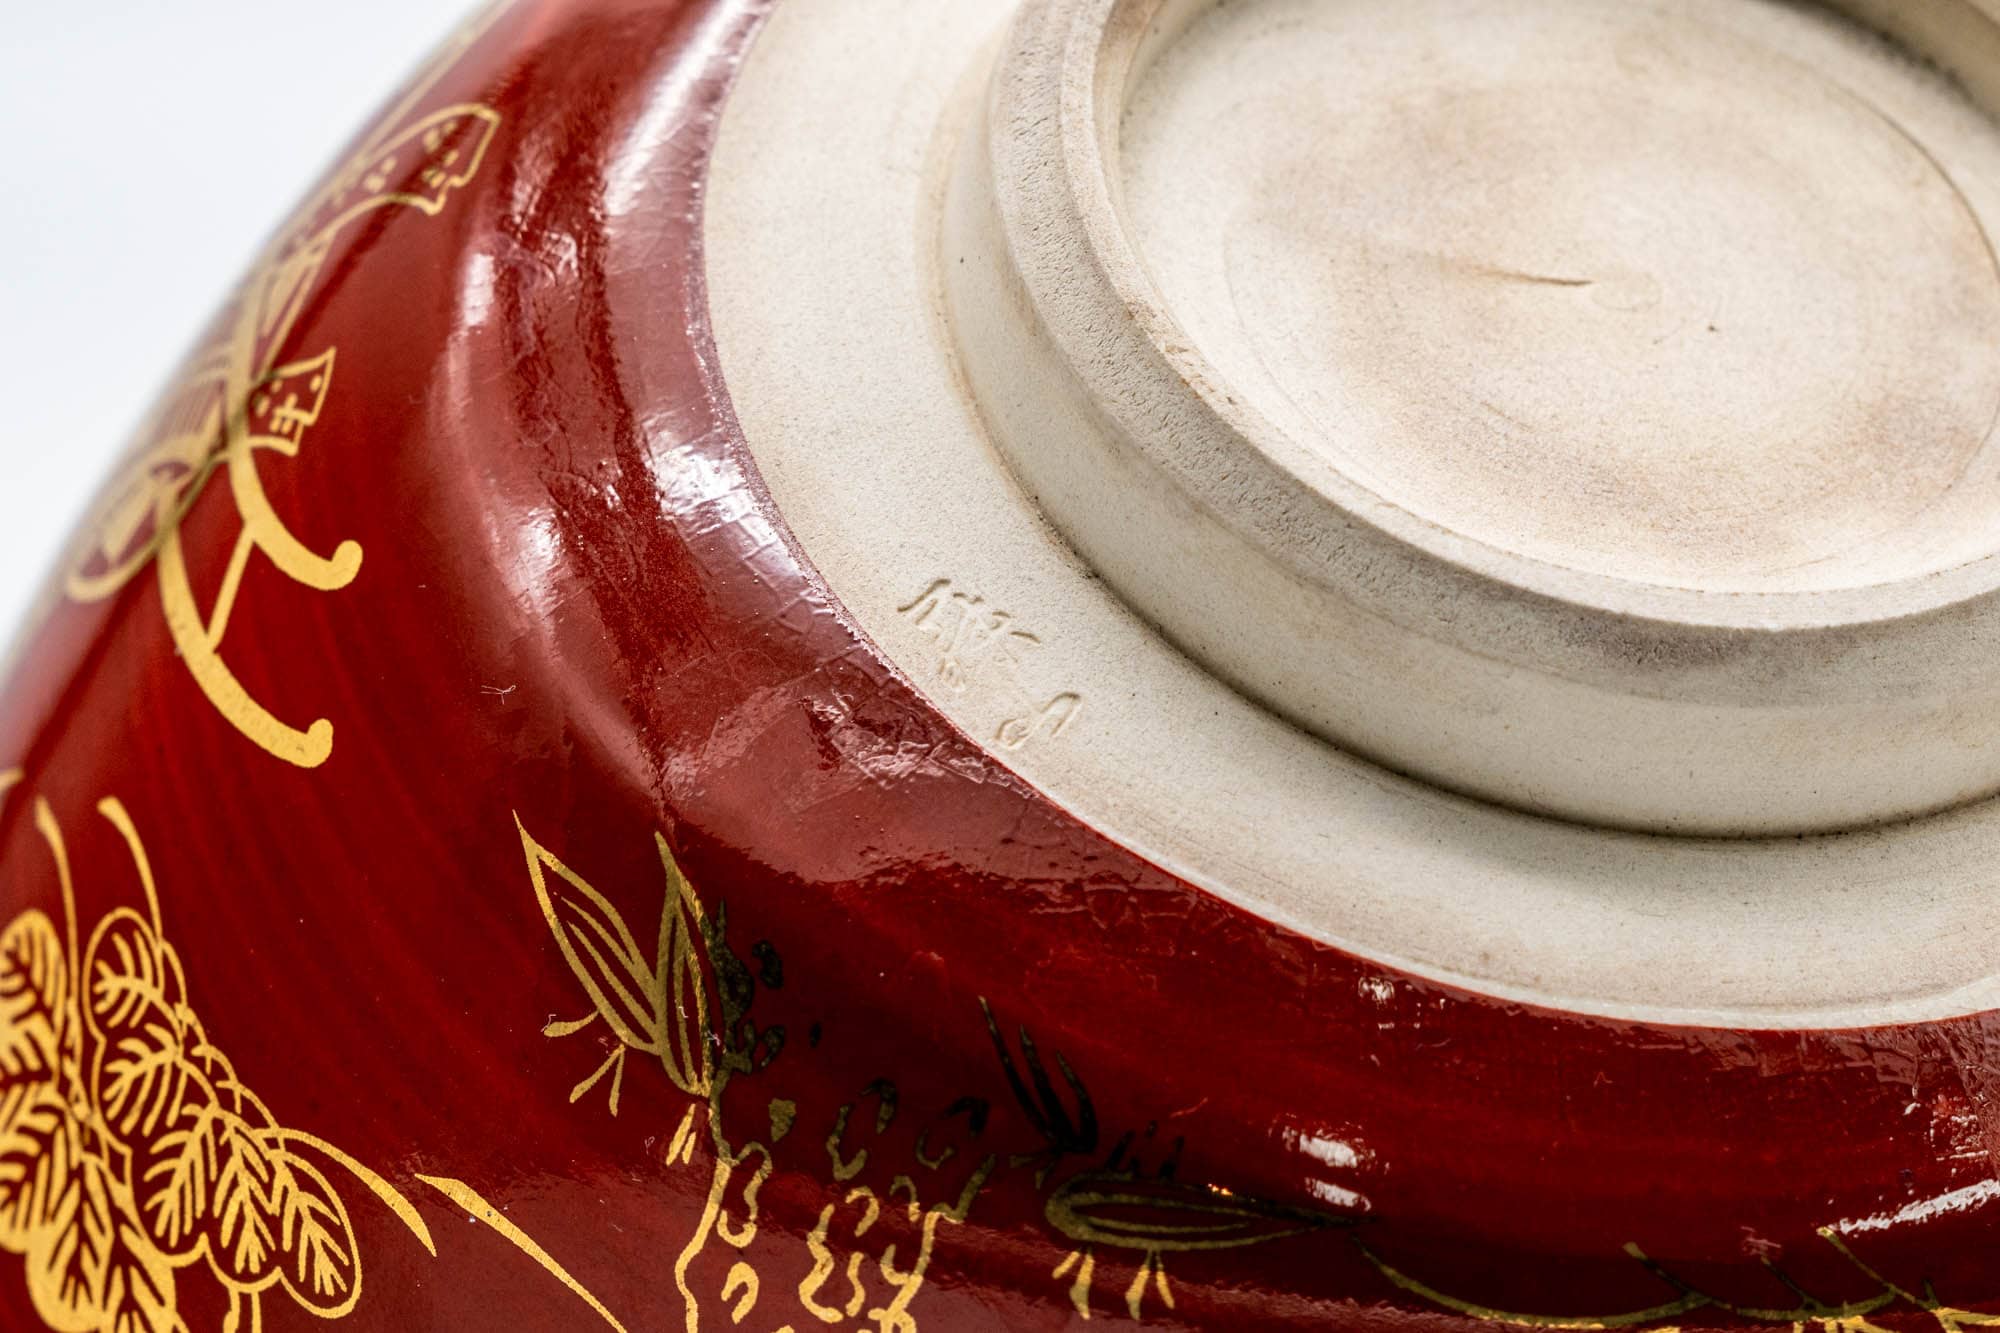 Japanese Matcha Bowl - Bamboo Floral Gold Red Kyo-yaki Chawan - 250ml